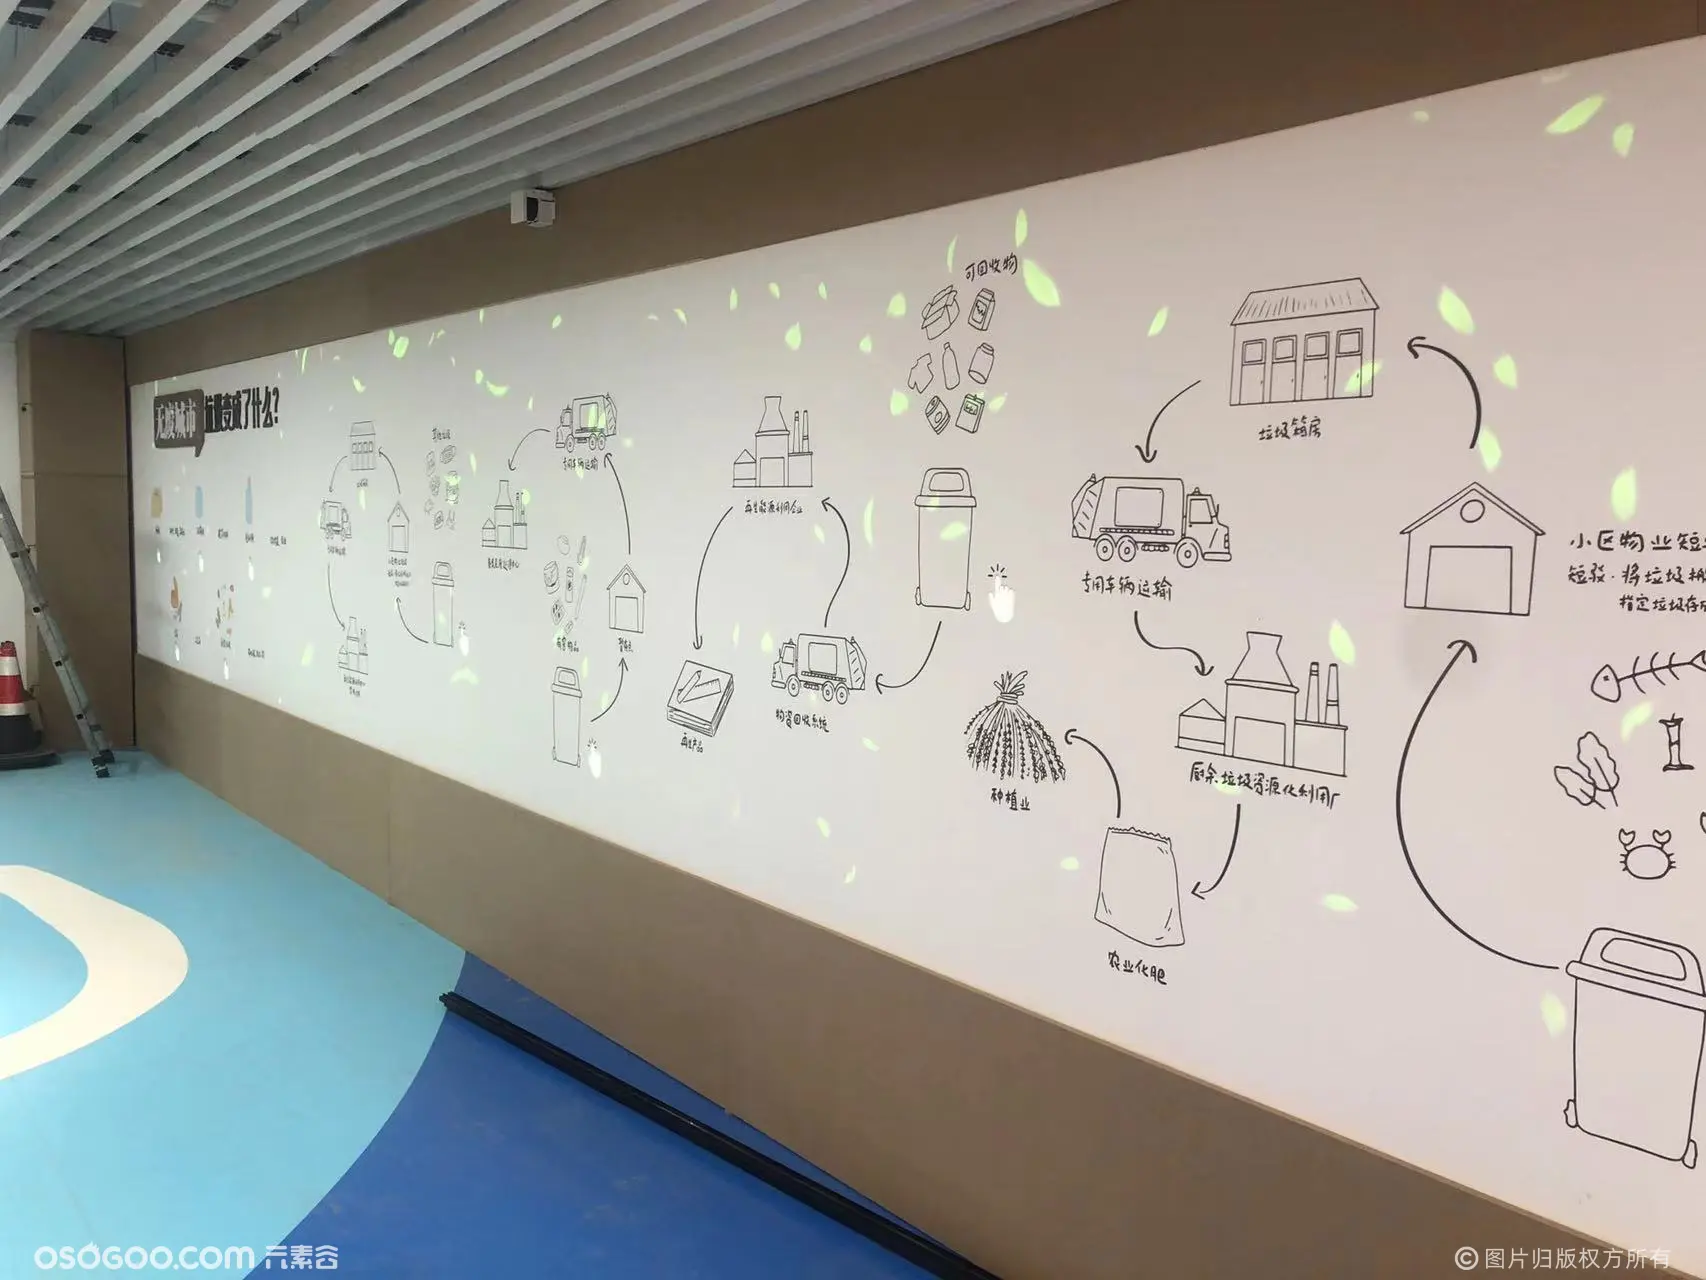 垃圾分类投影互动墙人体触摸感应魔法墙舟山奥特莱斯环保展厅